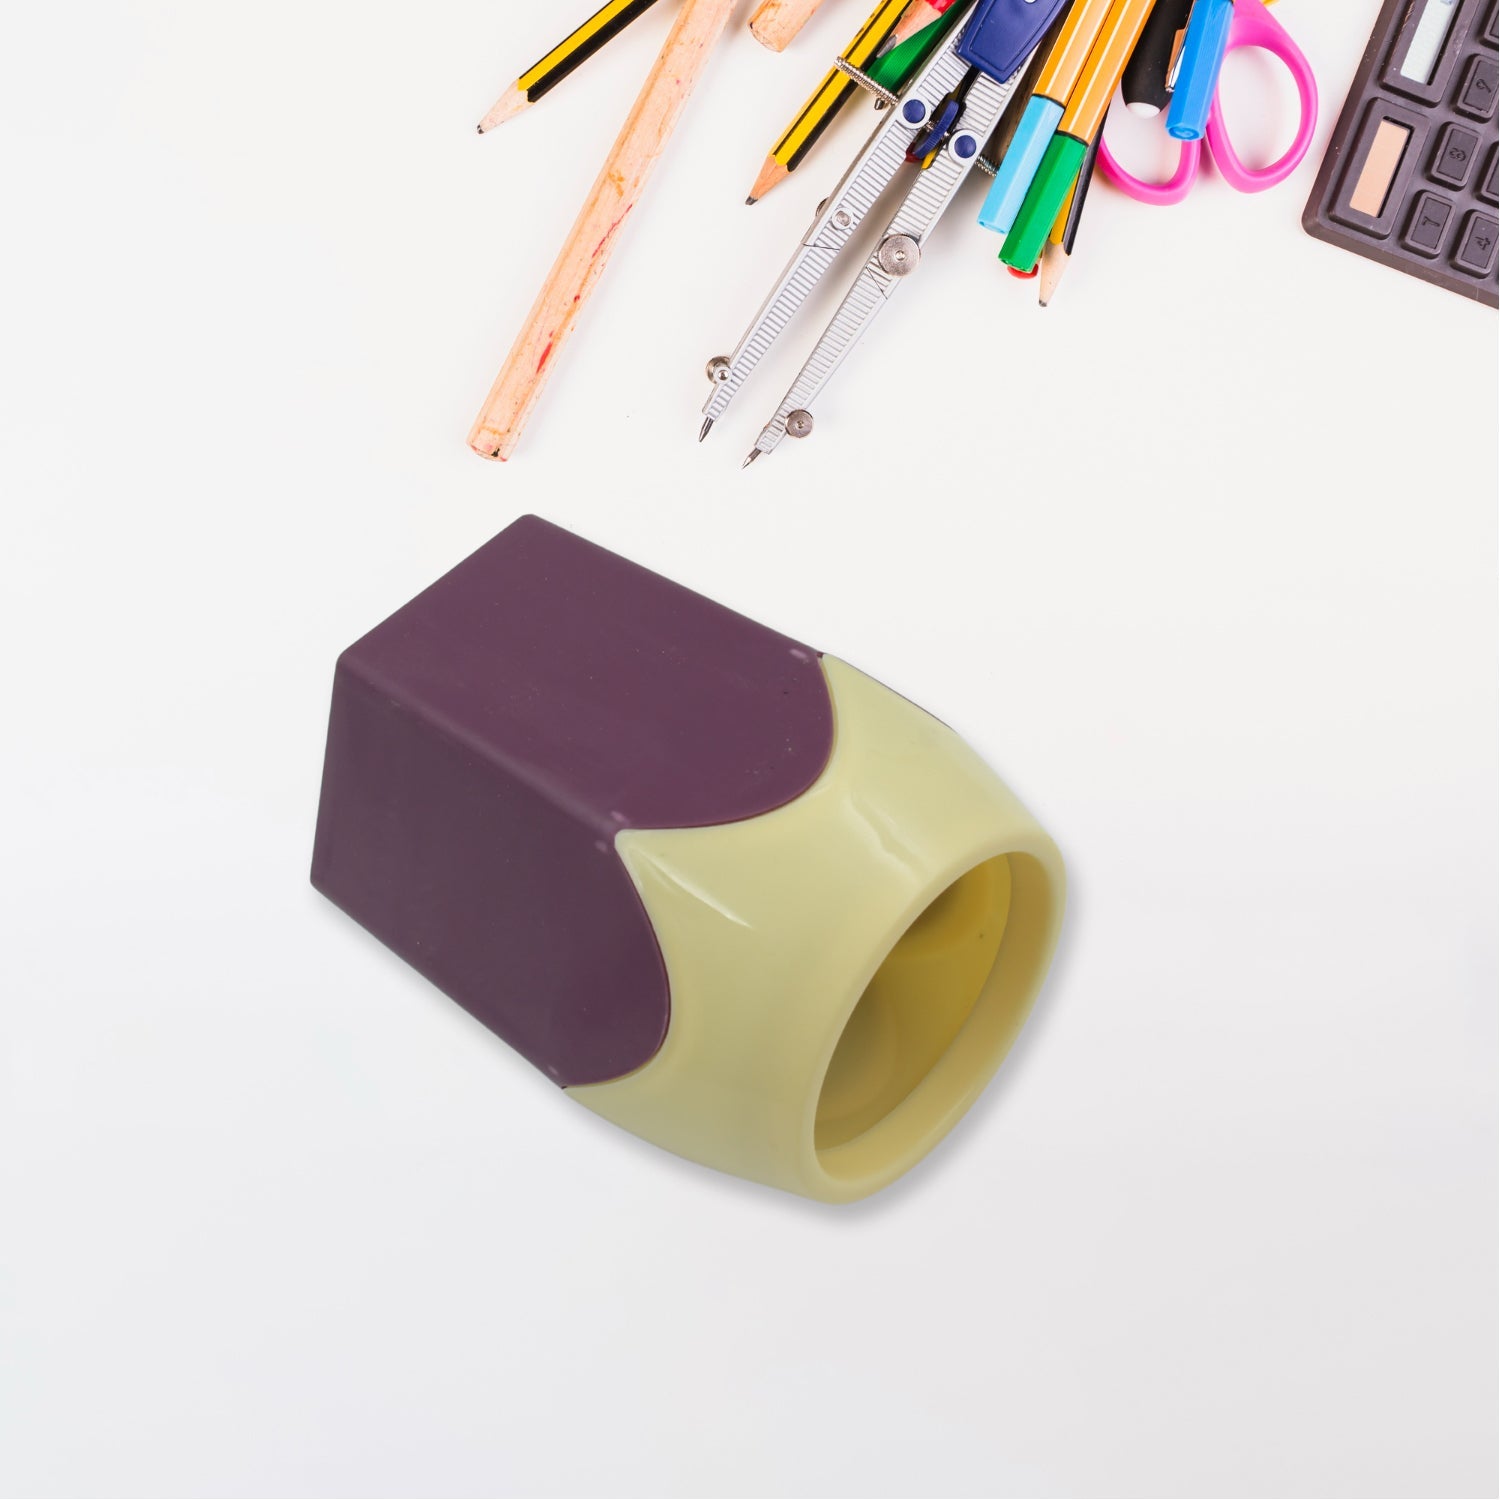 4312 Pencil Pot, Desk Pen Pencil Holder, Makeup Brush Holder, Container Pot for Desk Accessories Supplies Organizer, Home, Office, School Decoration Desktop Decor (1 Pc)